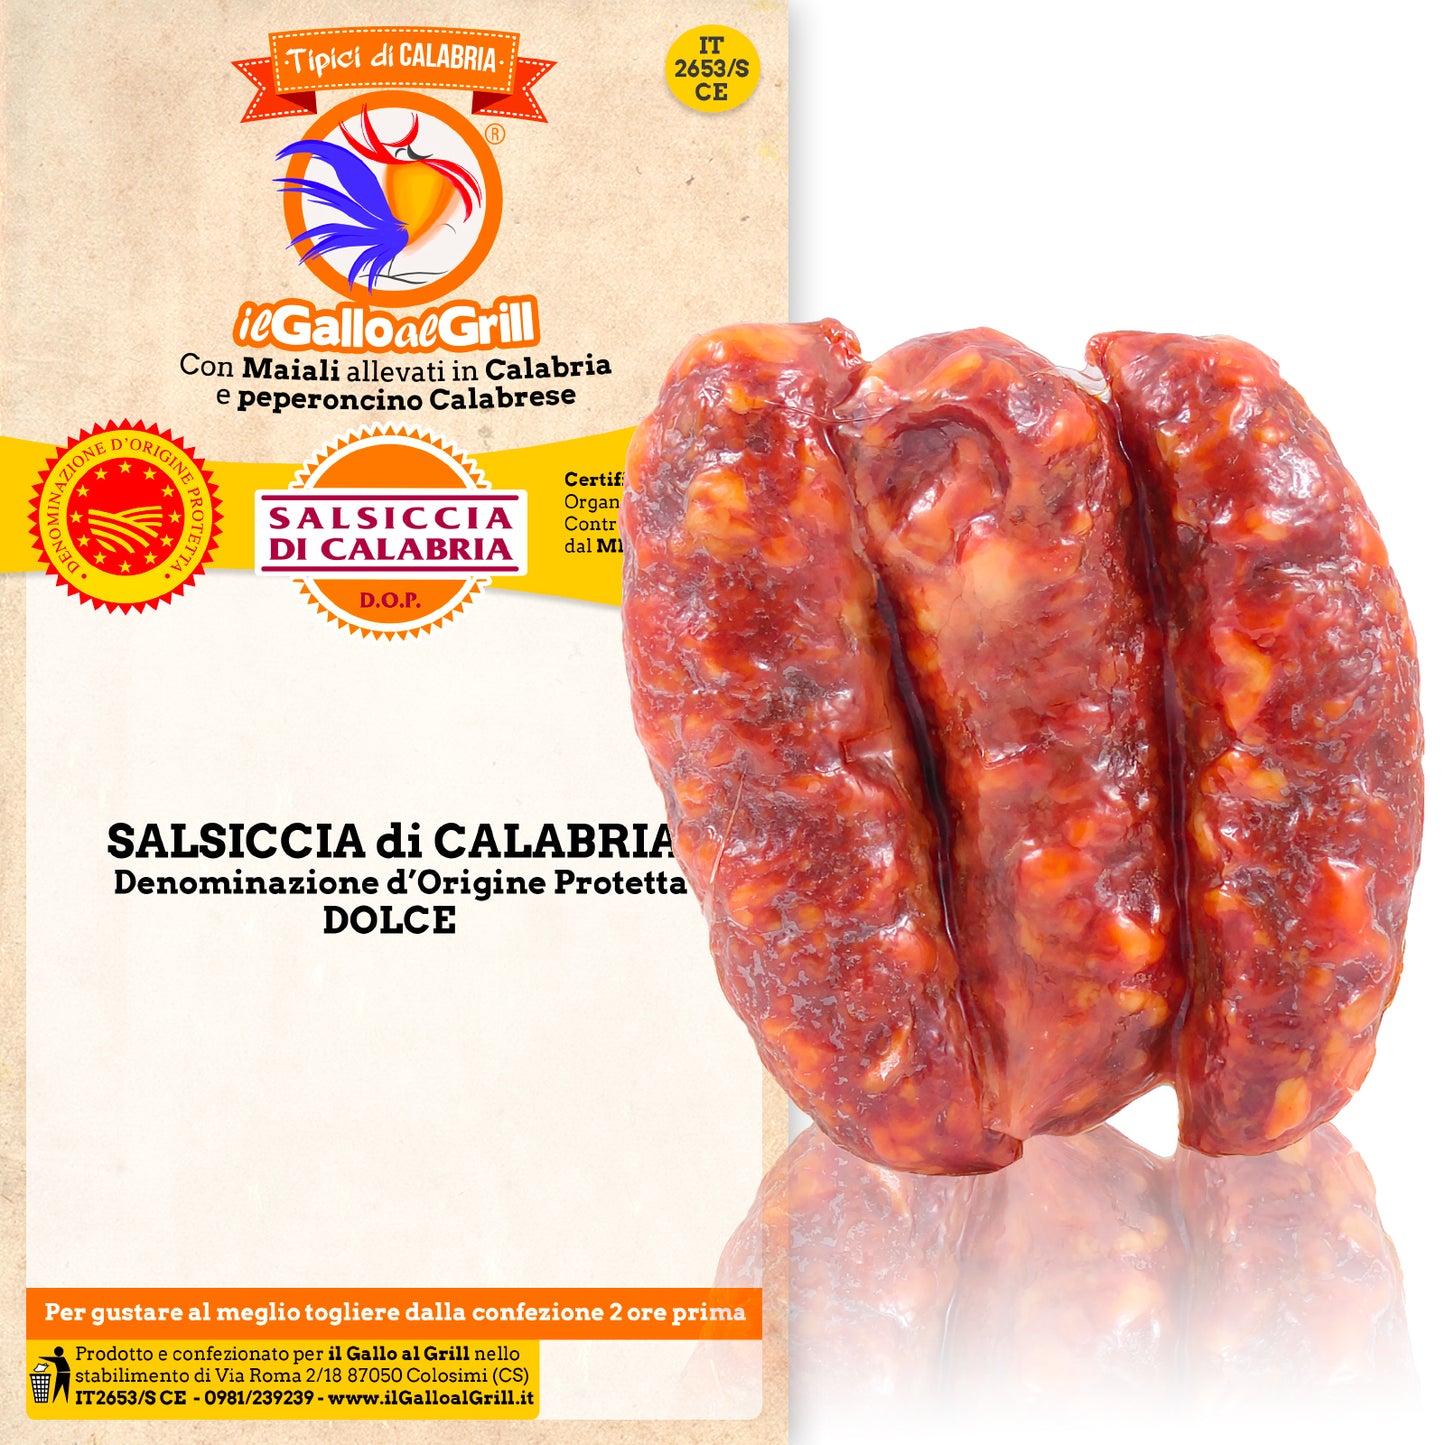 Salsiccia di Calabria DOP - Catenella